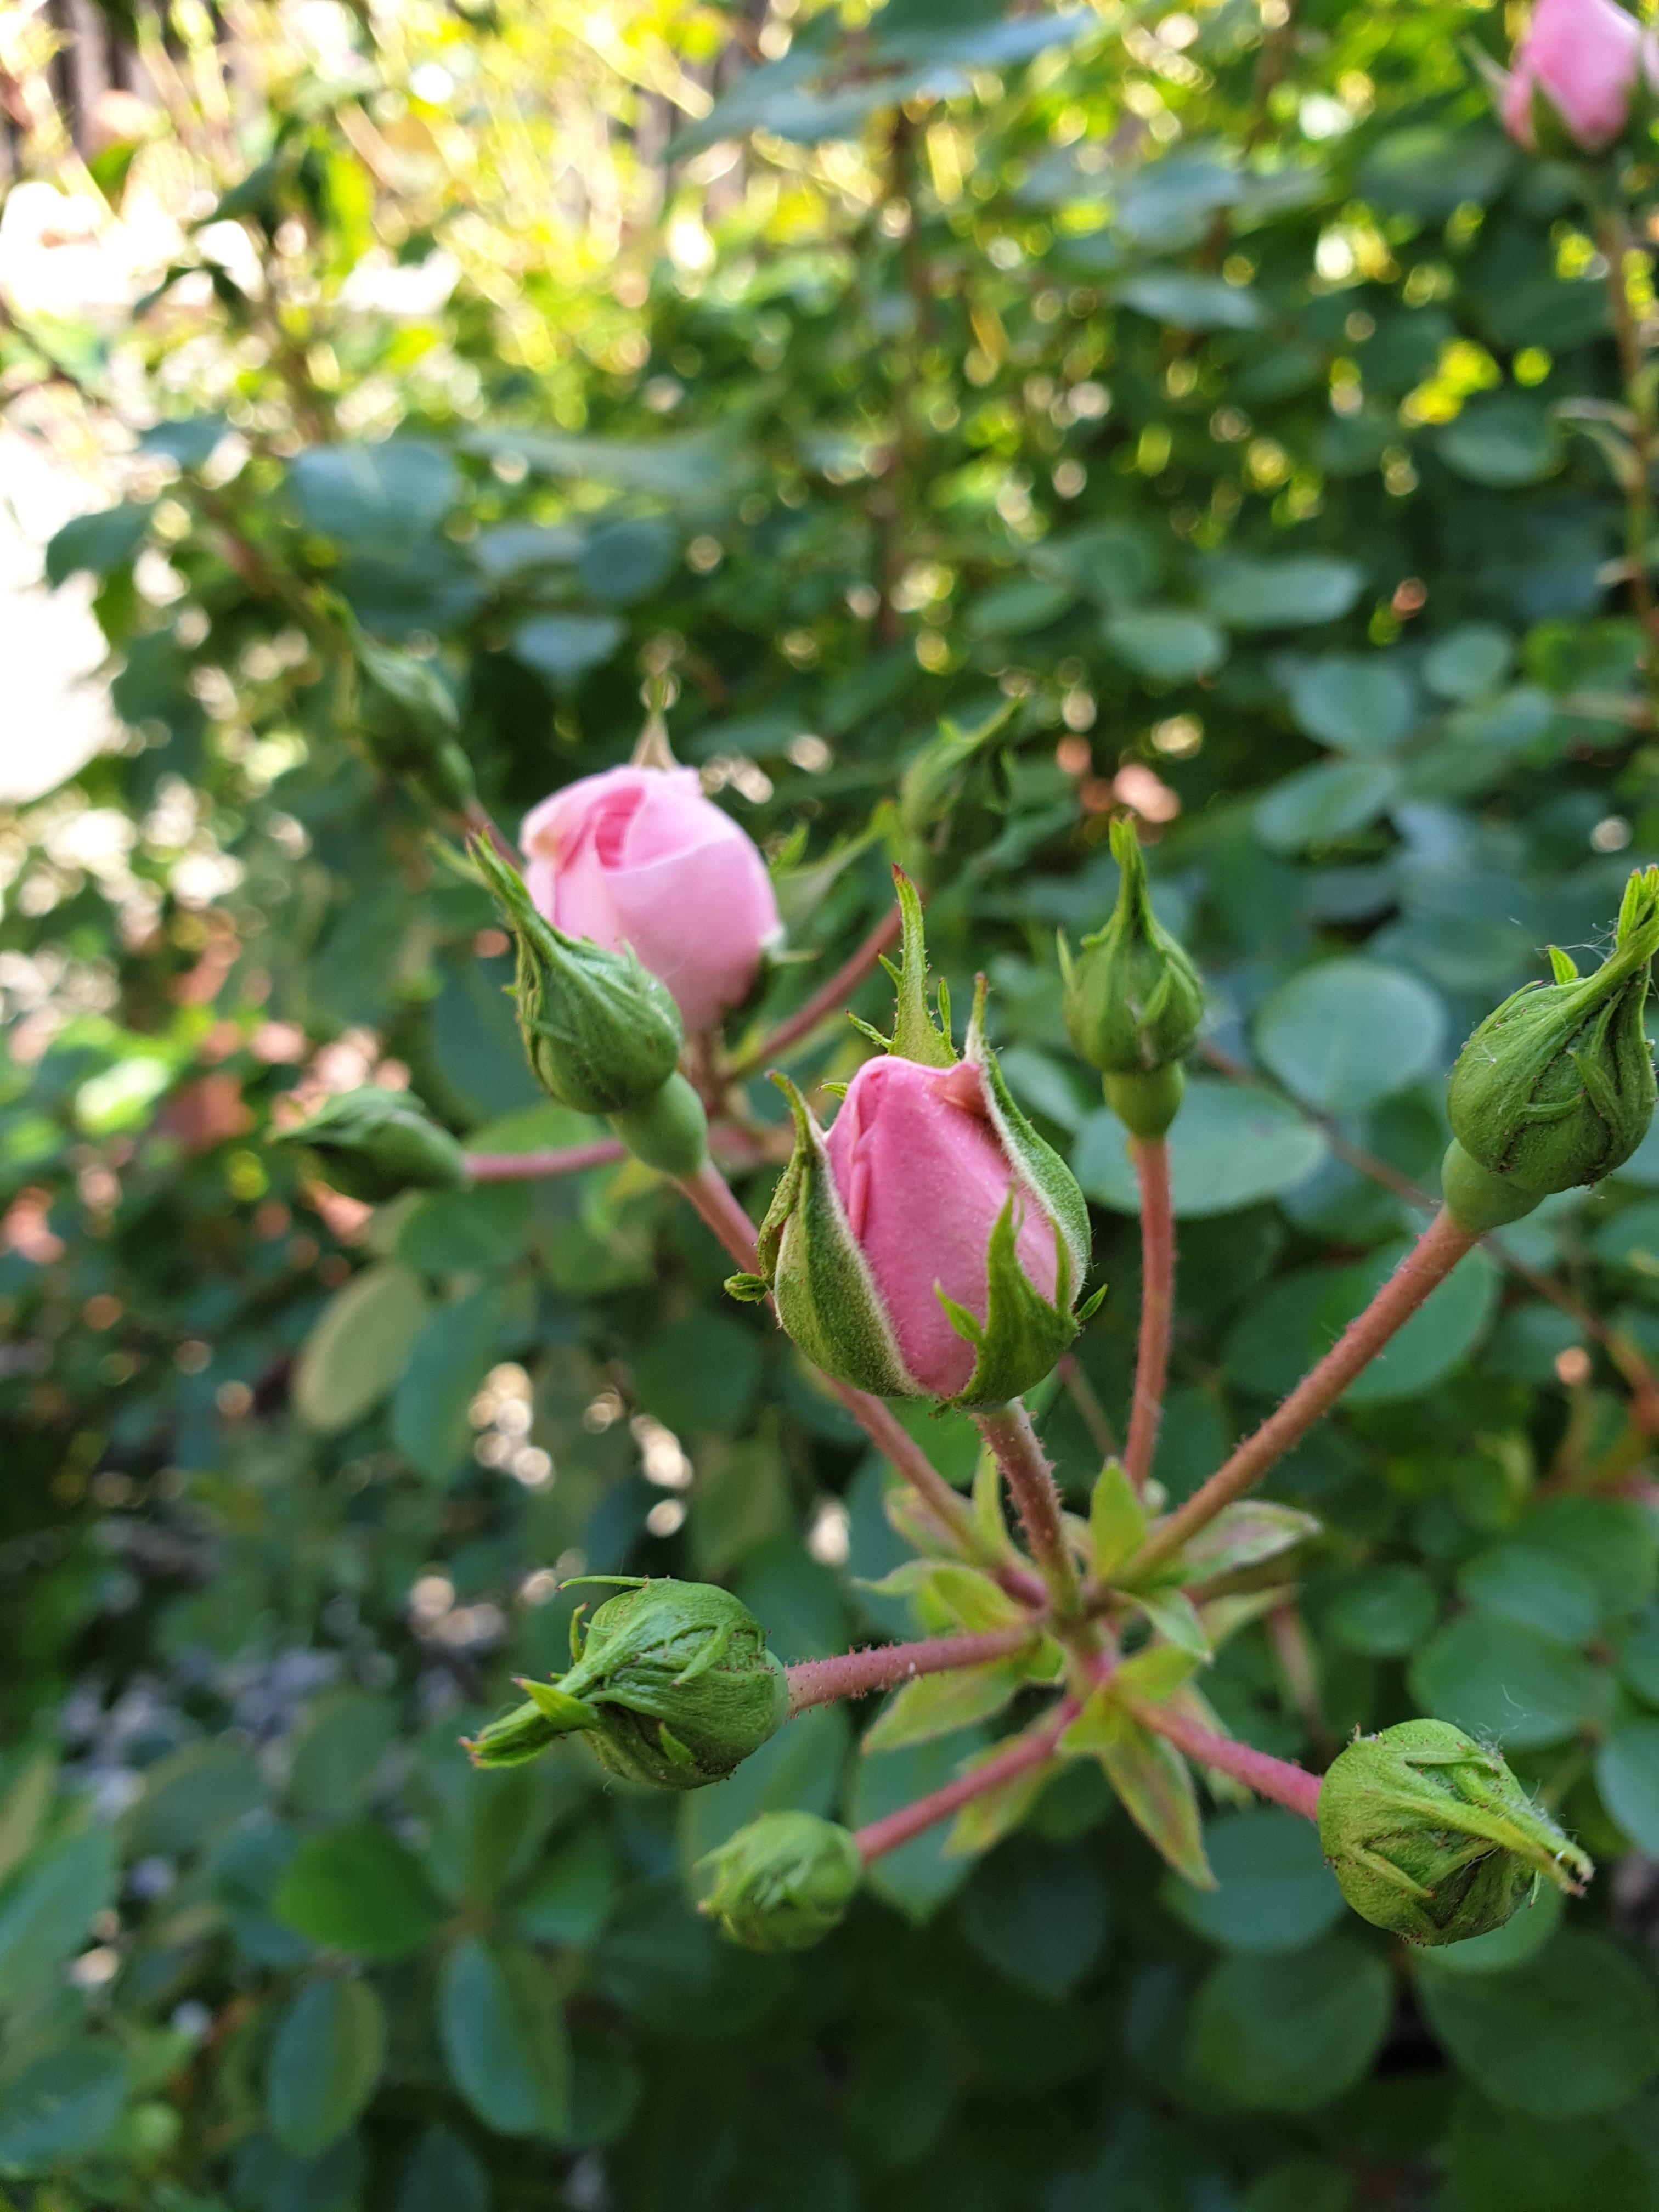 Bald gibts die volle Blütenpracht ⚘ #rose #frühling #blumen #flowers #flowerpower #garten #vorgarten